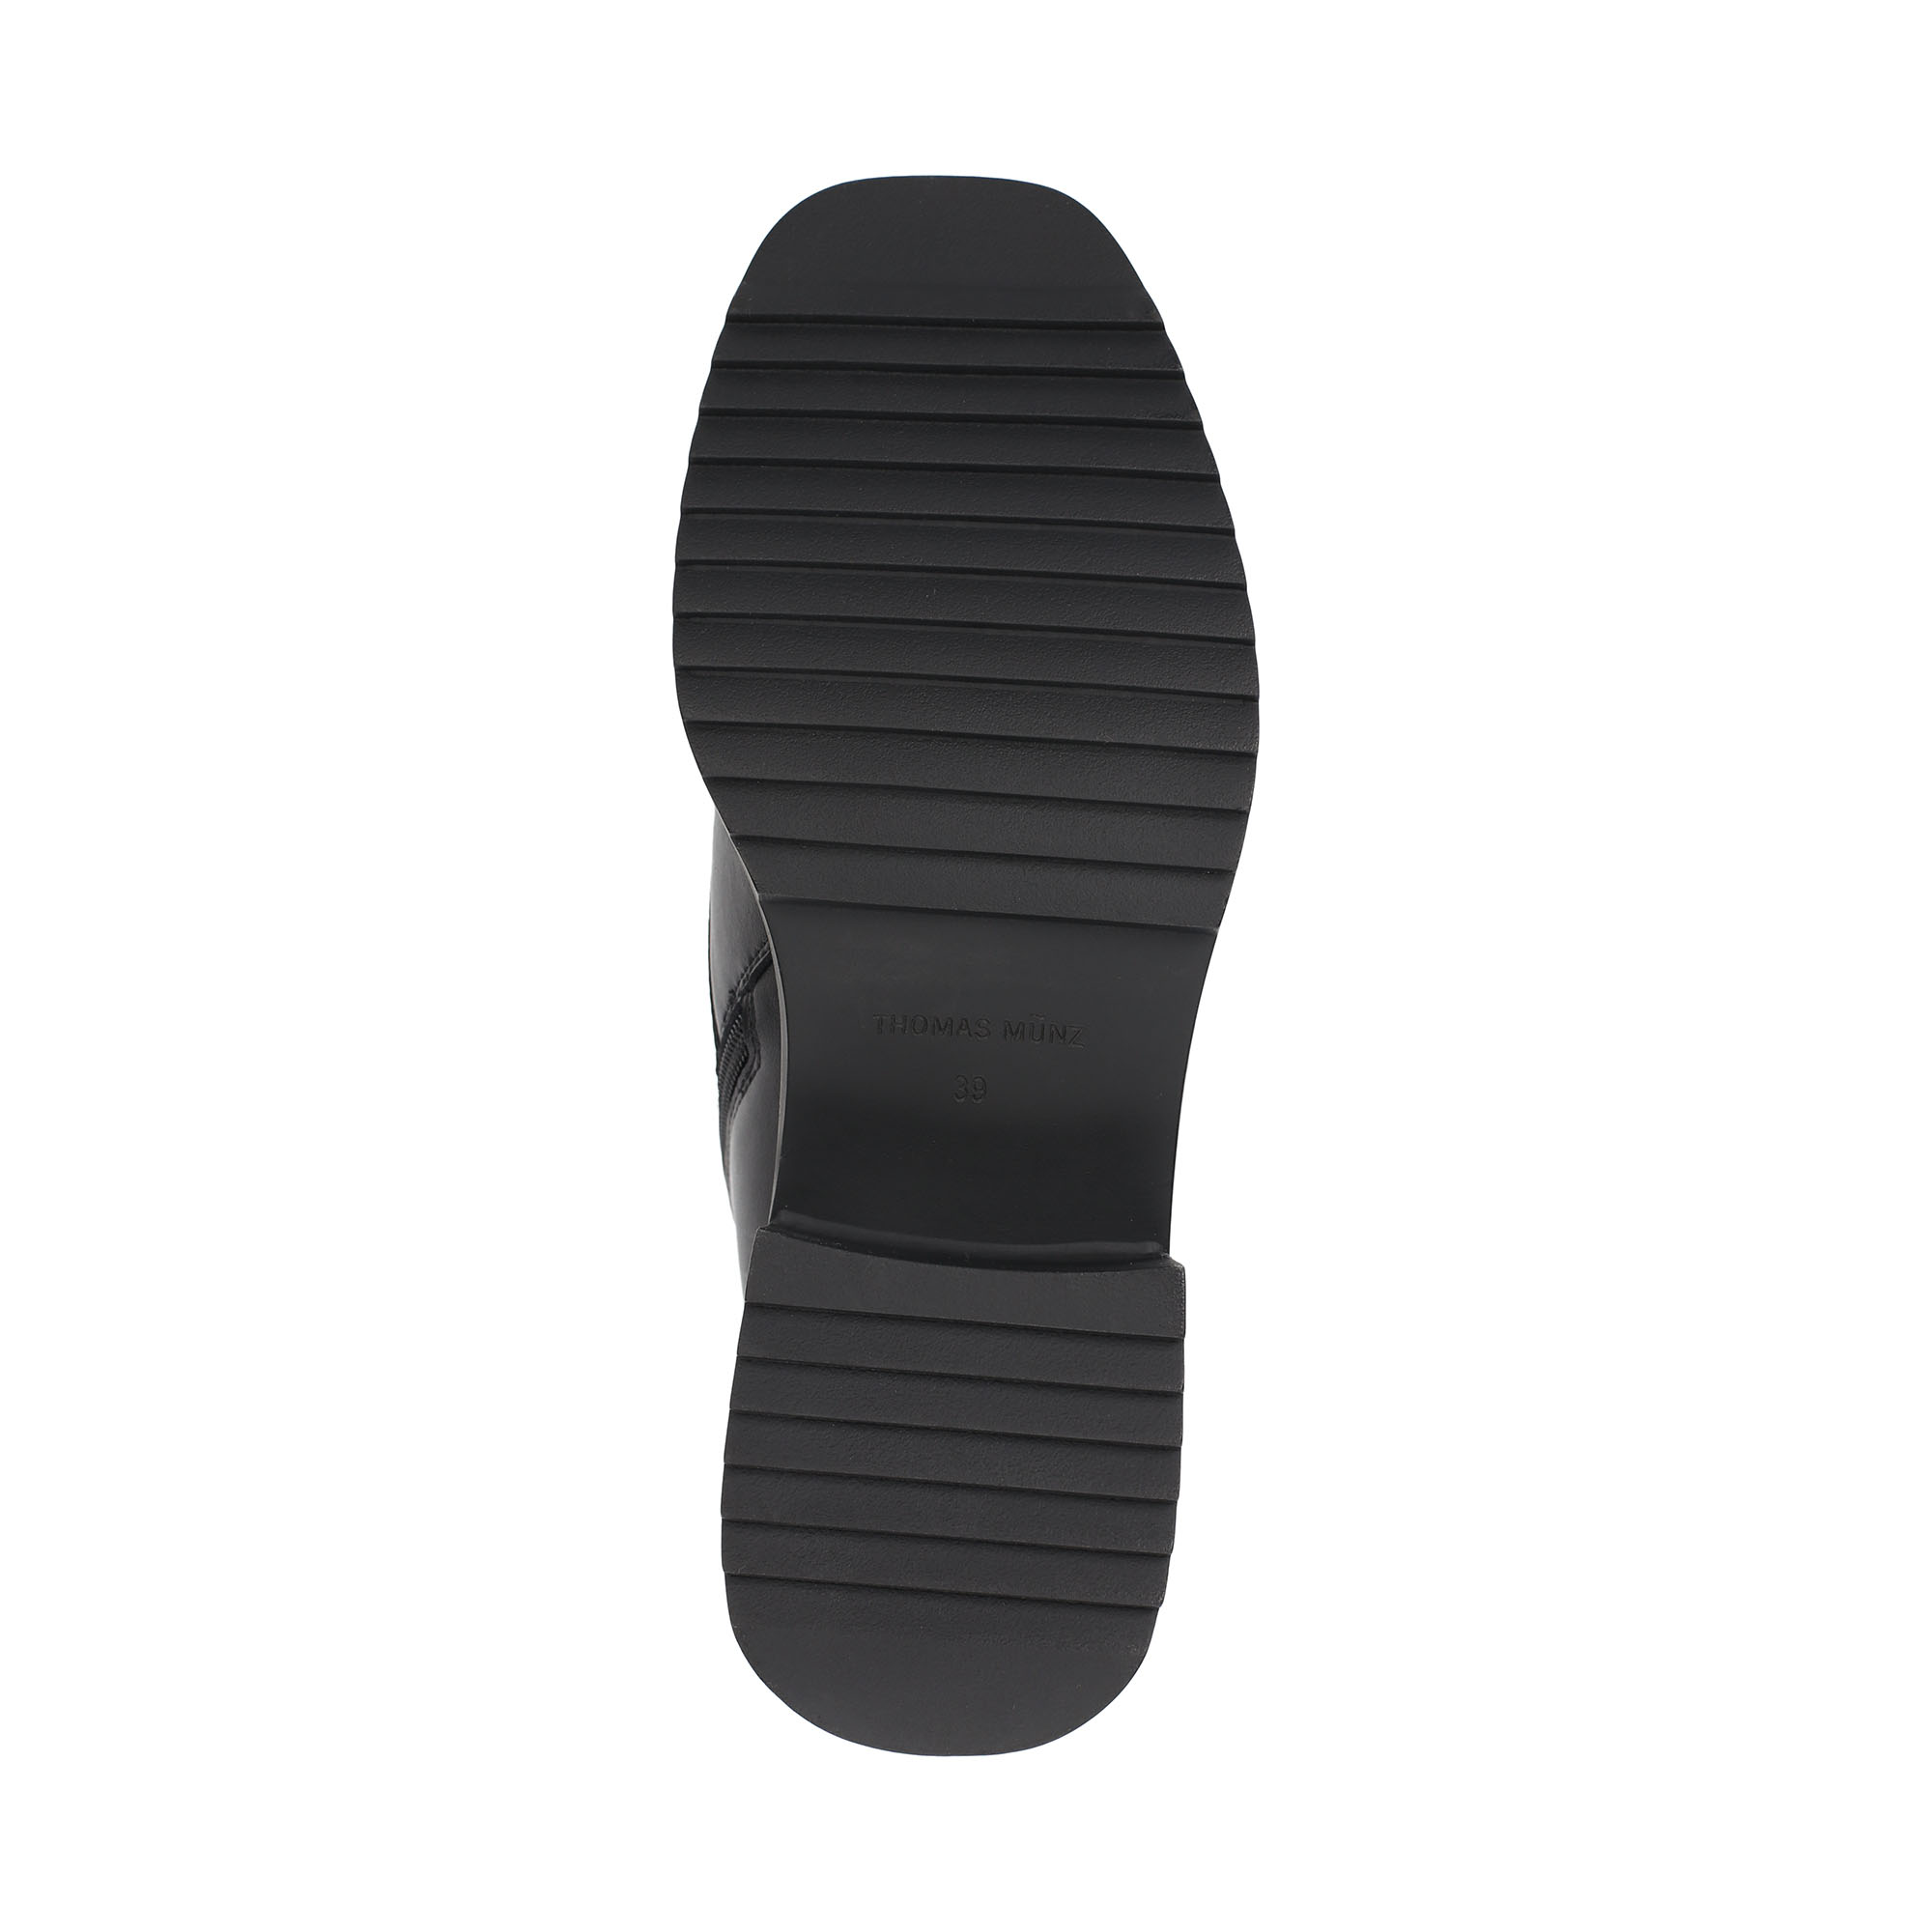 Ботинки Thomas Munz 102-202A-5602, цвет черный, размер 38 - фото 4